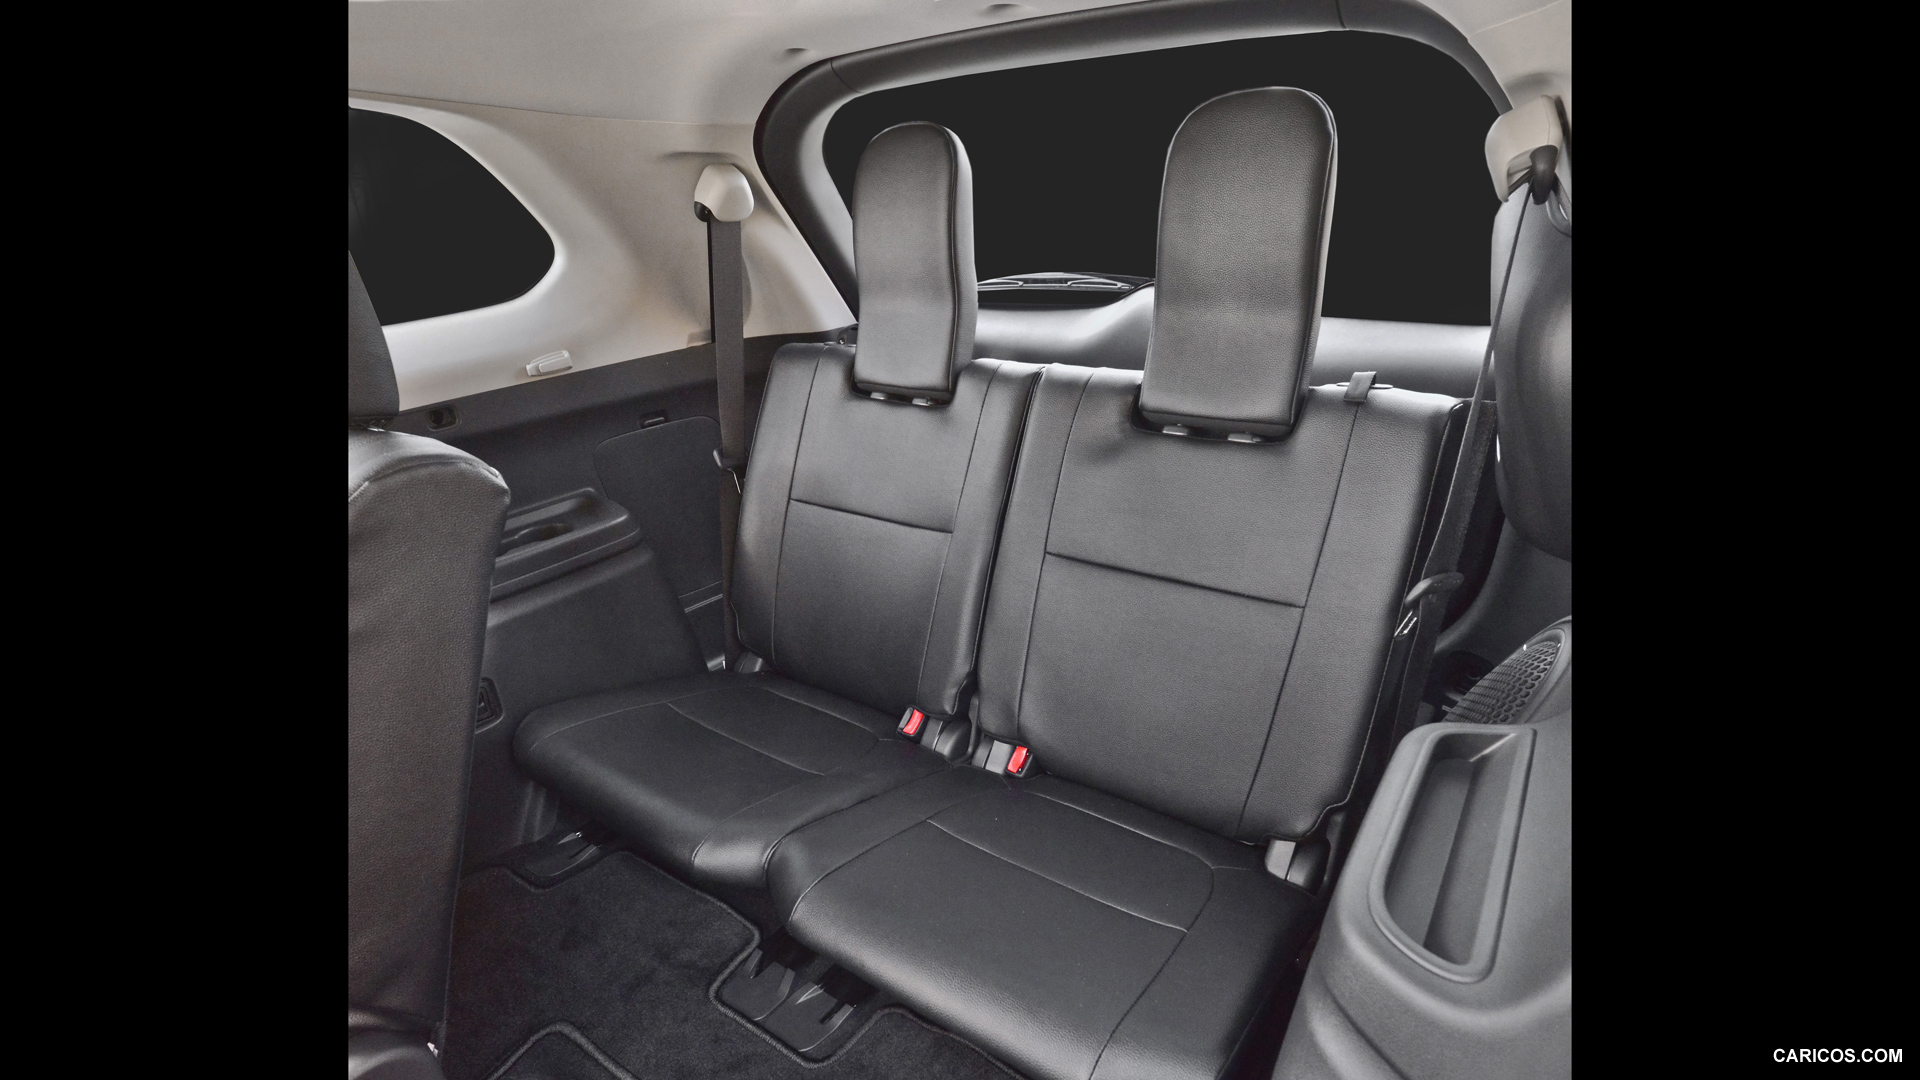 2016 Mitsubishi Outlander - Third Row Seating - Interior, #46 of 46